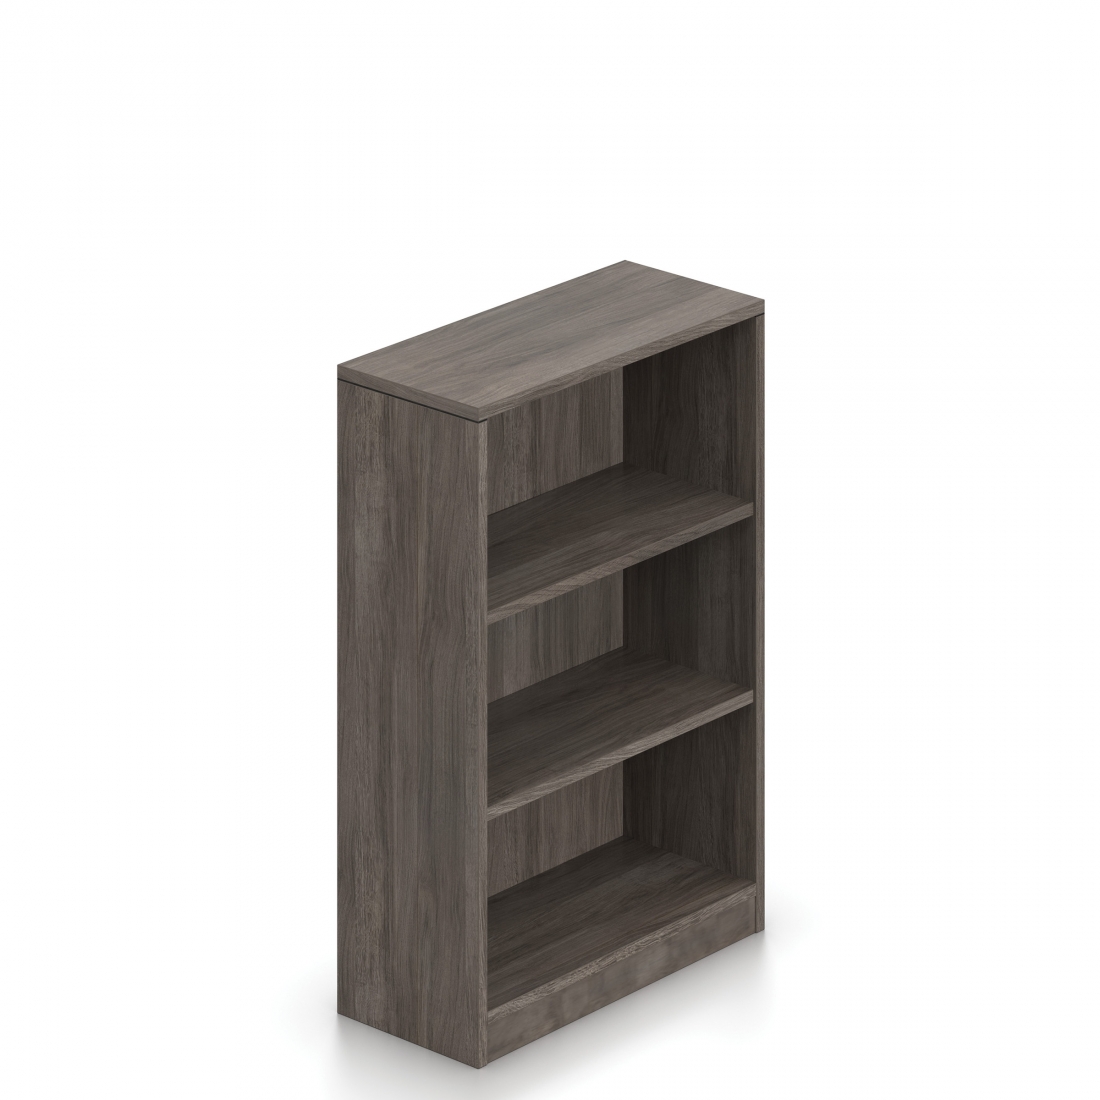 48”H 2 Shelf Bookcase